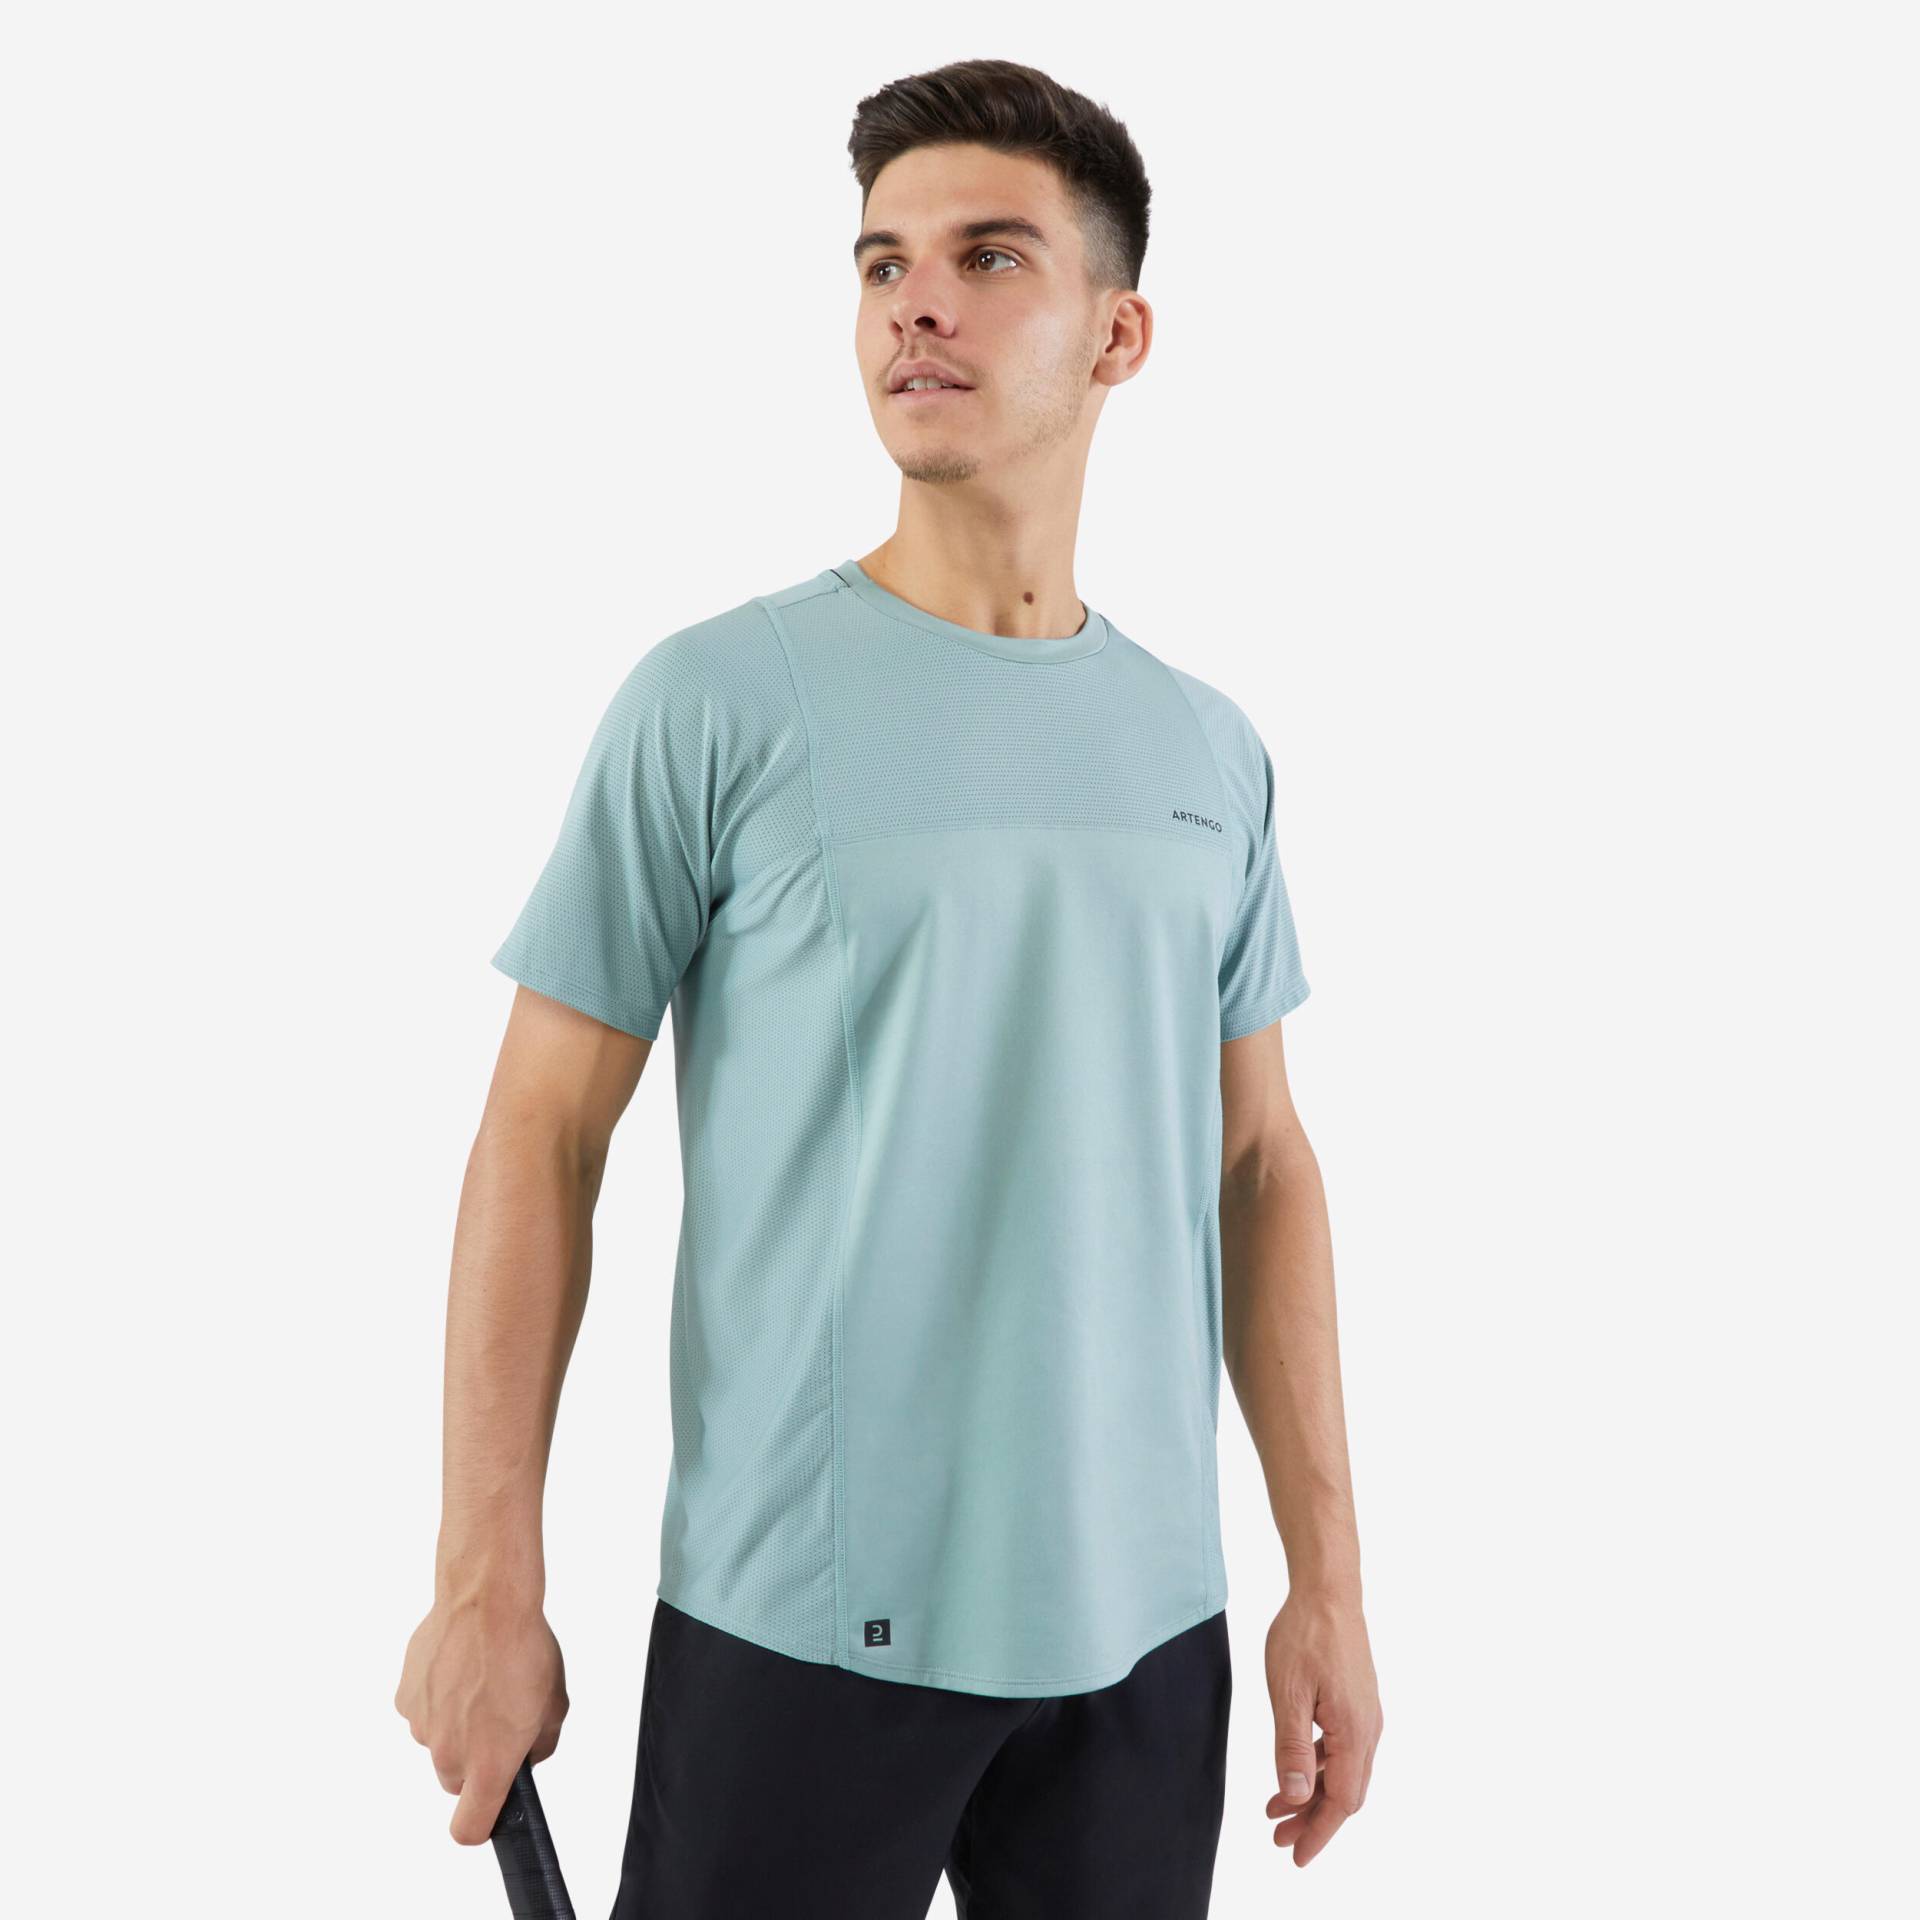 Herren Tennis T-Shirt - DRY Gaël Monfils graugrün von ARTENGO